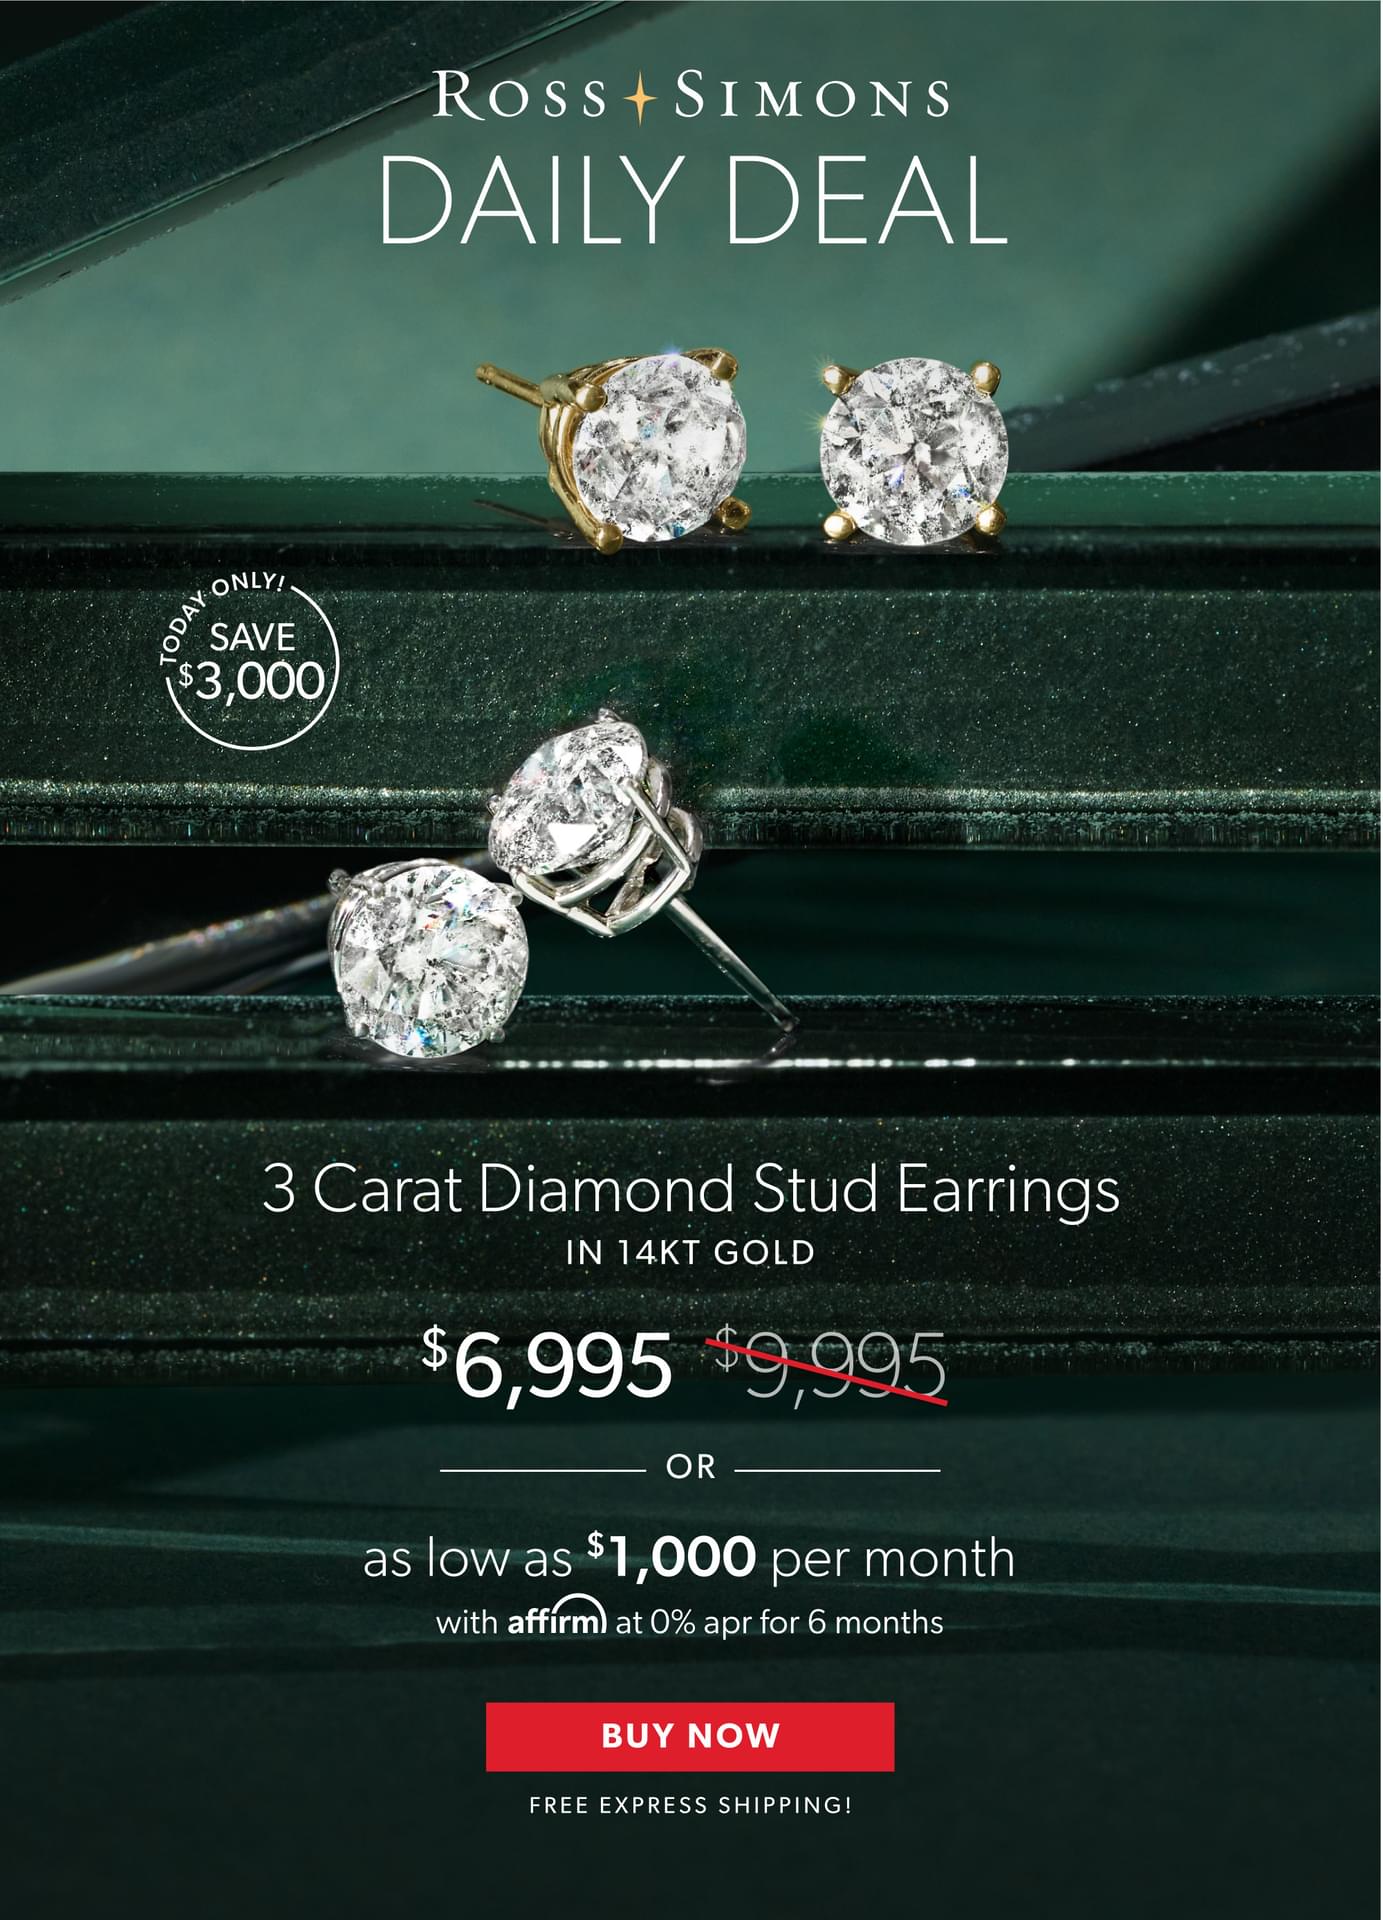 3 Carat Diamond Stud Earrings in 14kt Gold